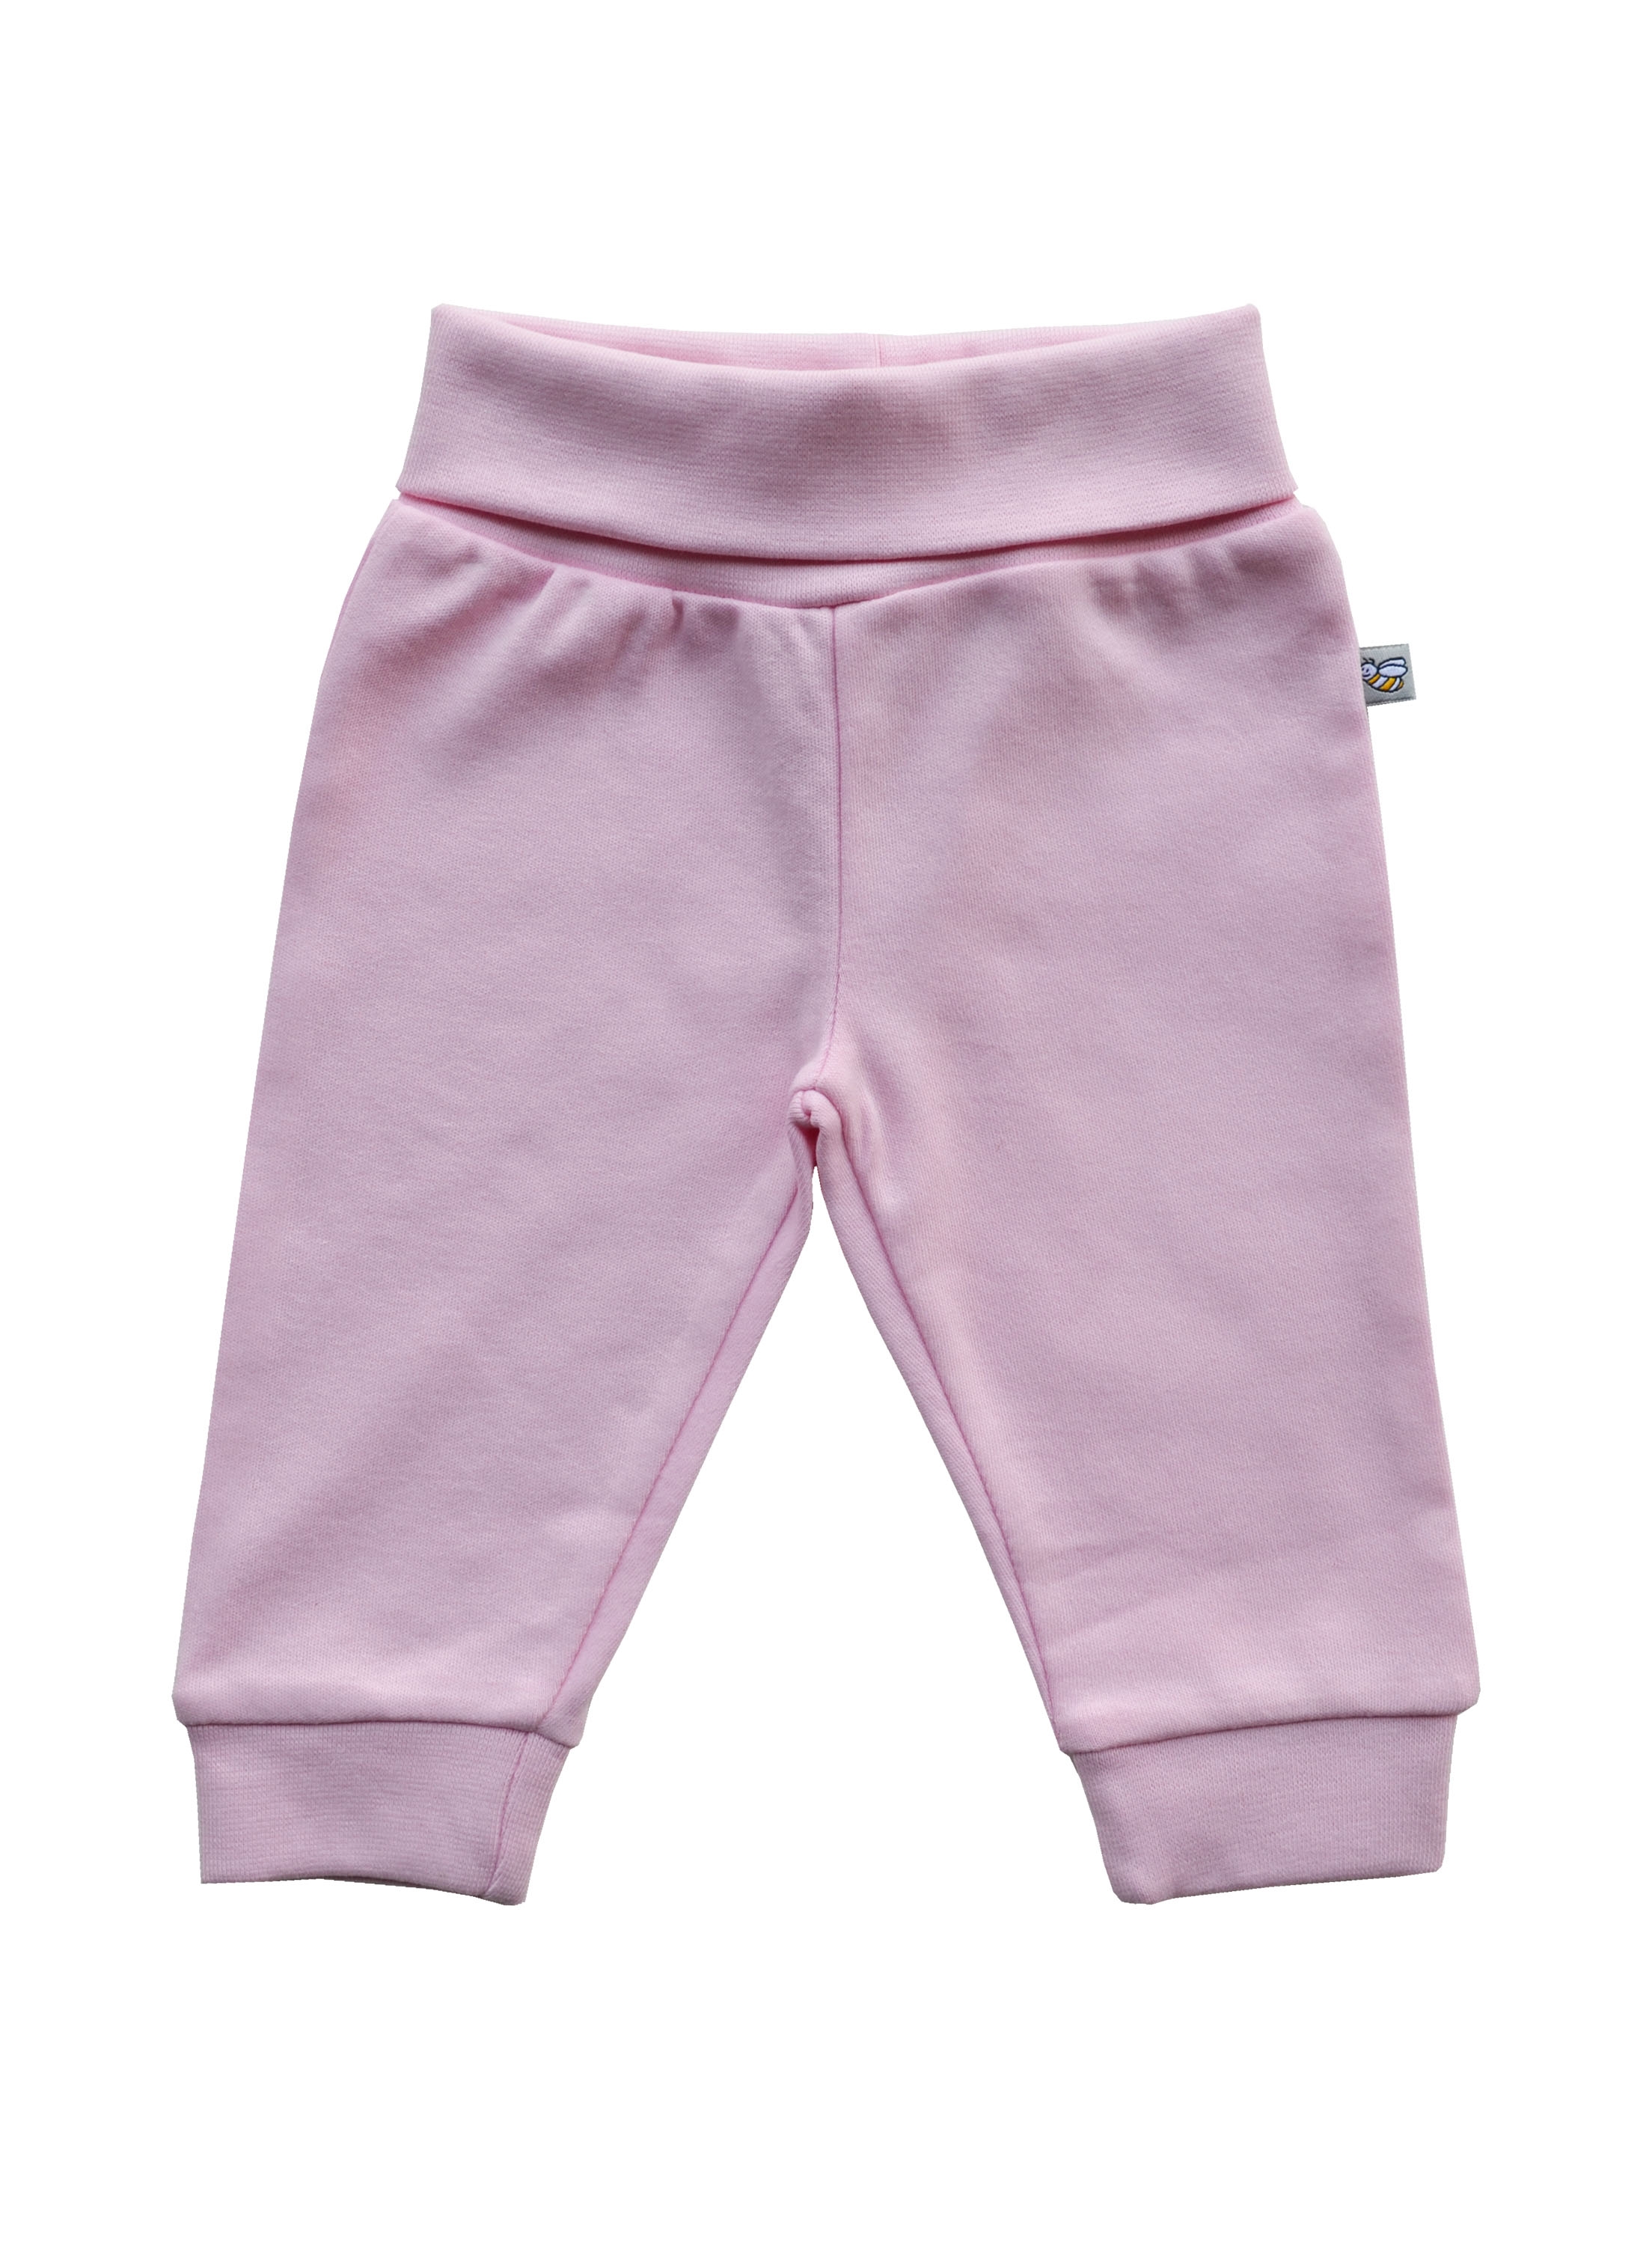 Babeez | Pink Pant (100% Cotton Interlock Biowash) undefined